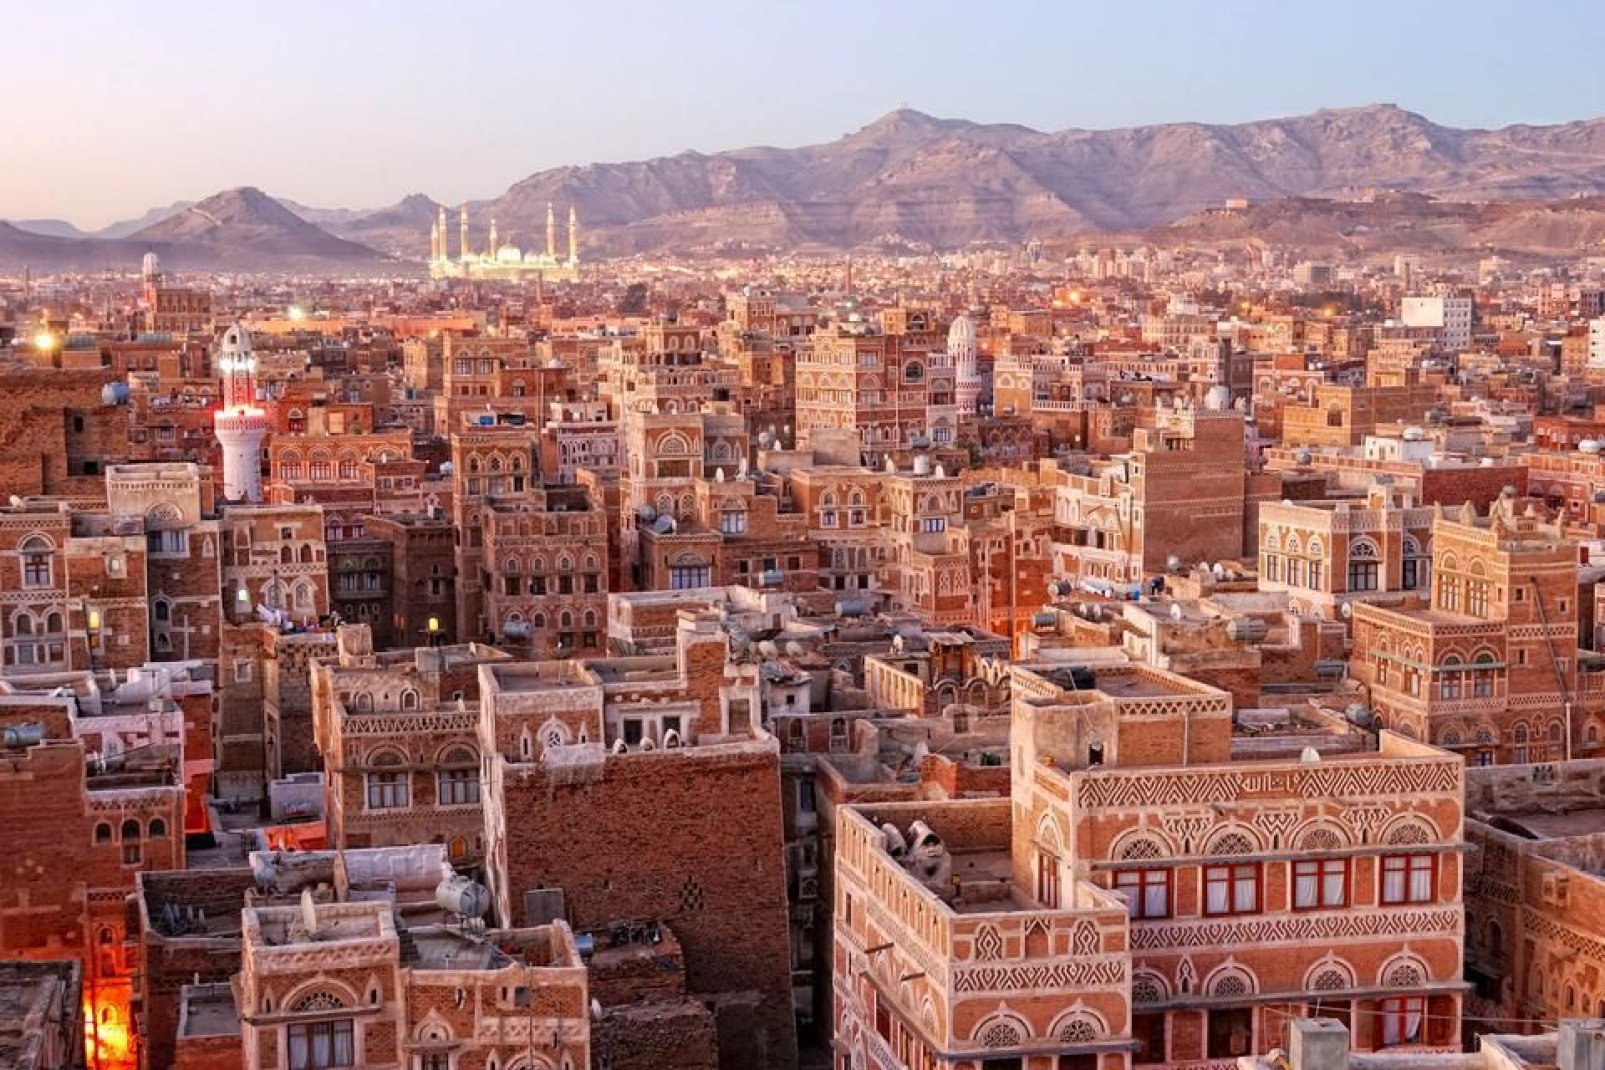 Die Altstadt von Sanaa, die von Alberto Moravia auch das "Venedig des Sandes" genannt wird, wurde von der UNESCO 1986 zum Weltkulturerbe erklrt.